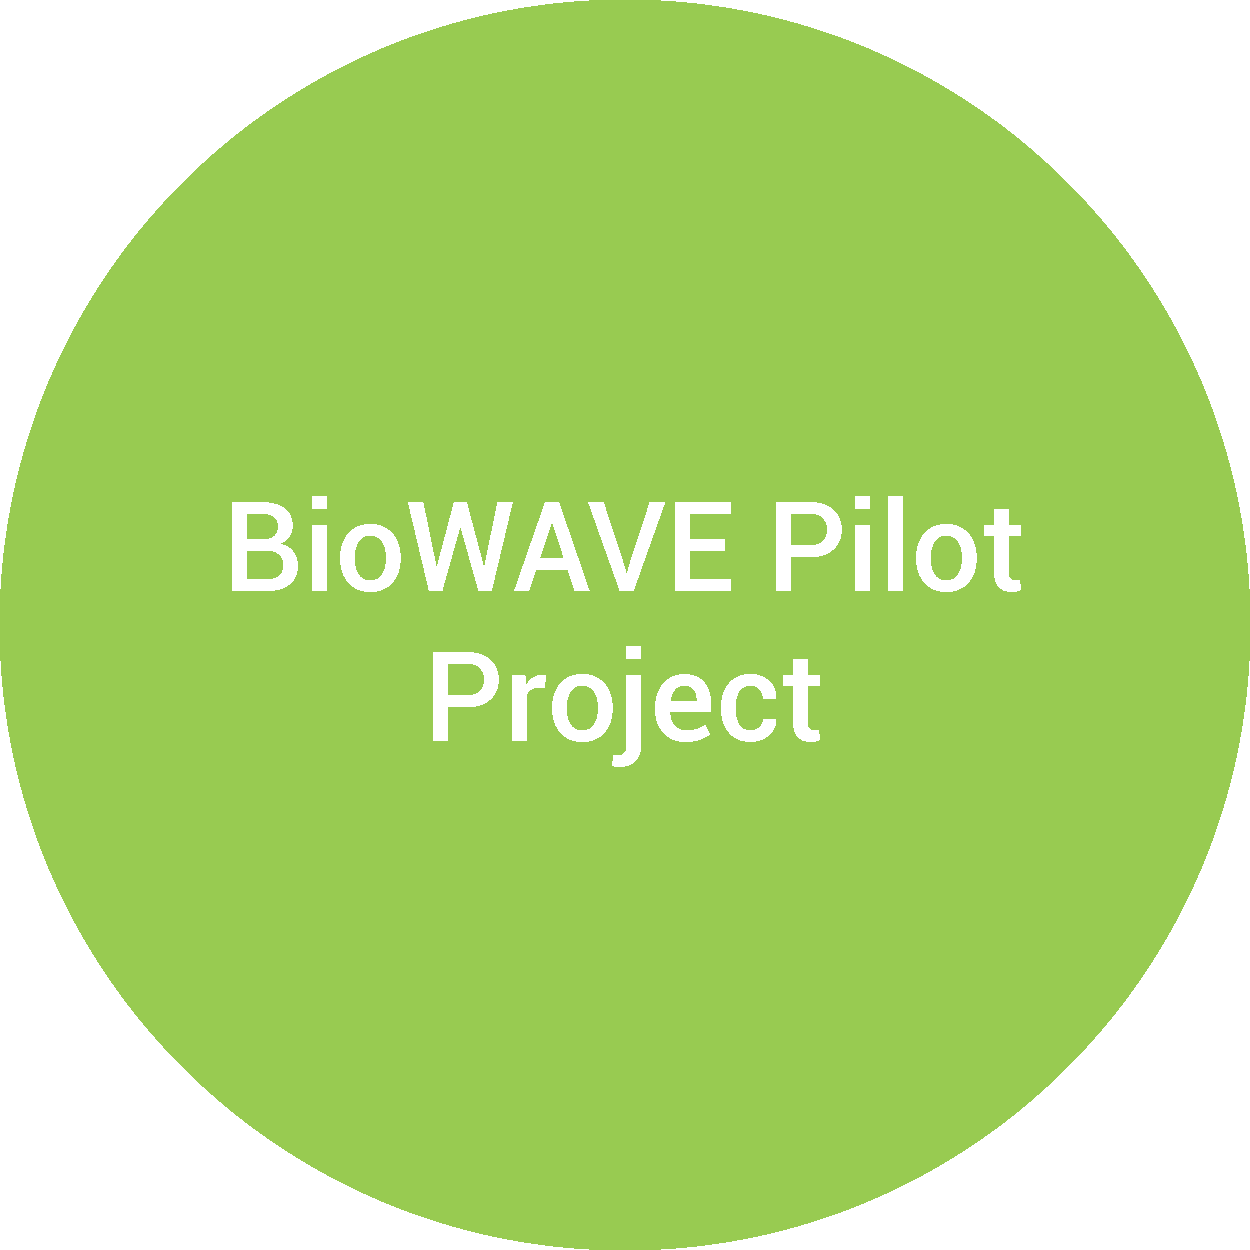 BioWAVE Pilot Project